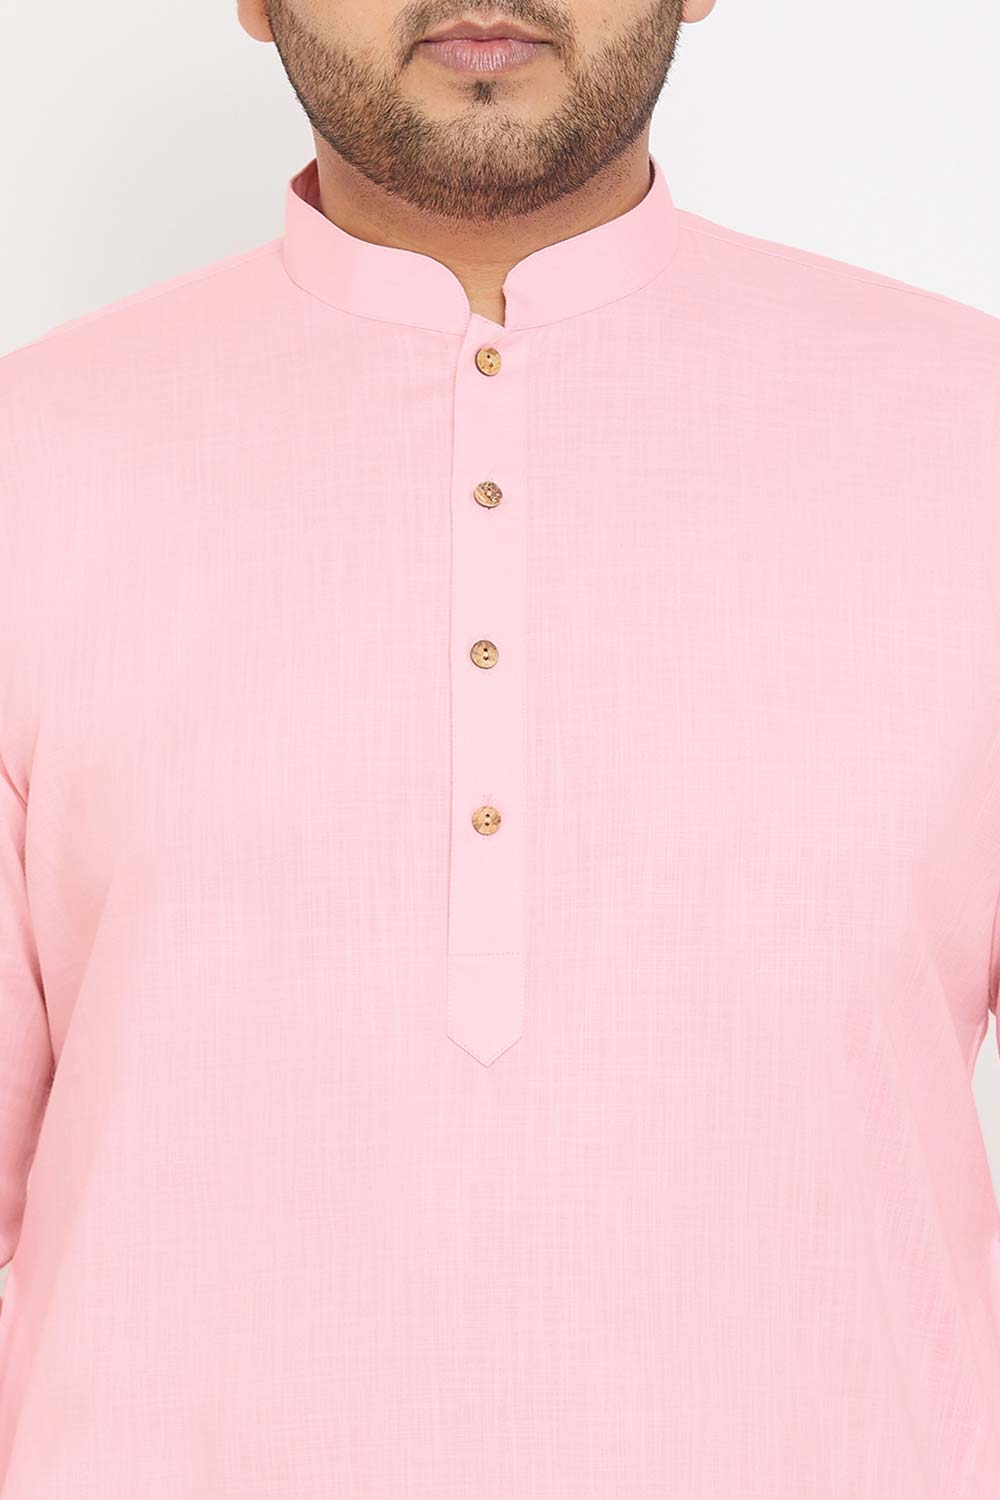 Buy Men's Cotton Blend Solid Kurta in Pink - Zoom in